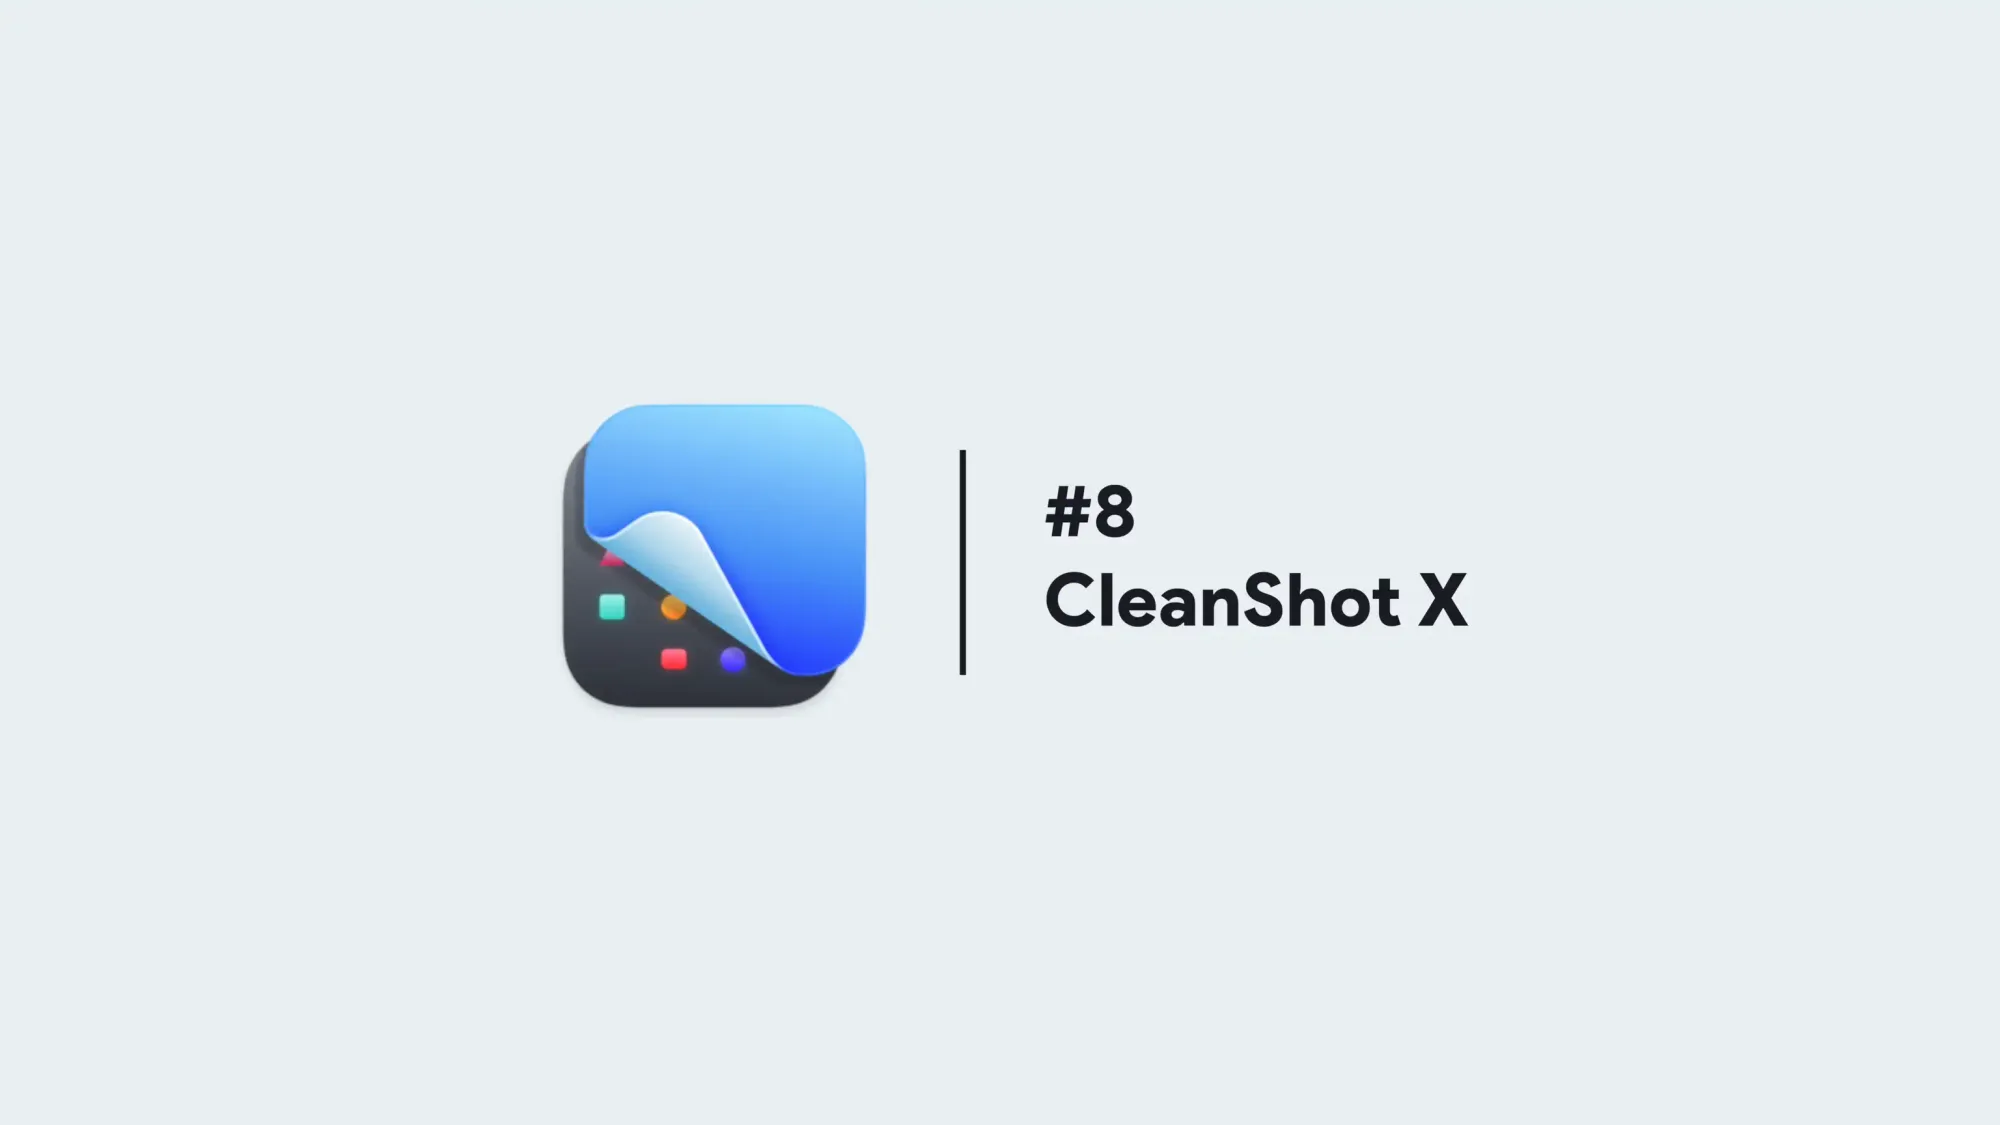 Cleanshot X